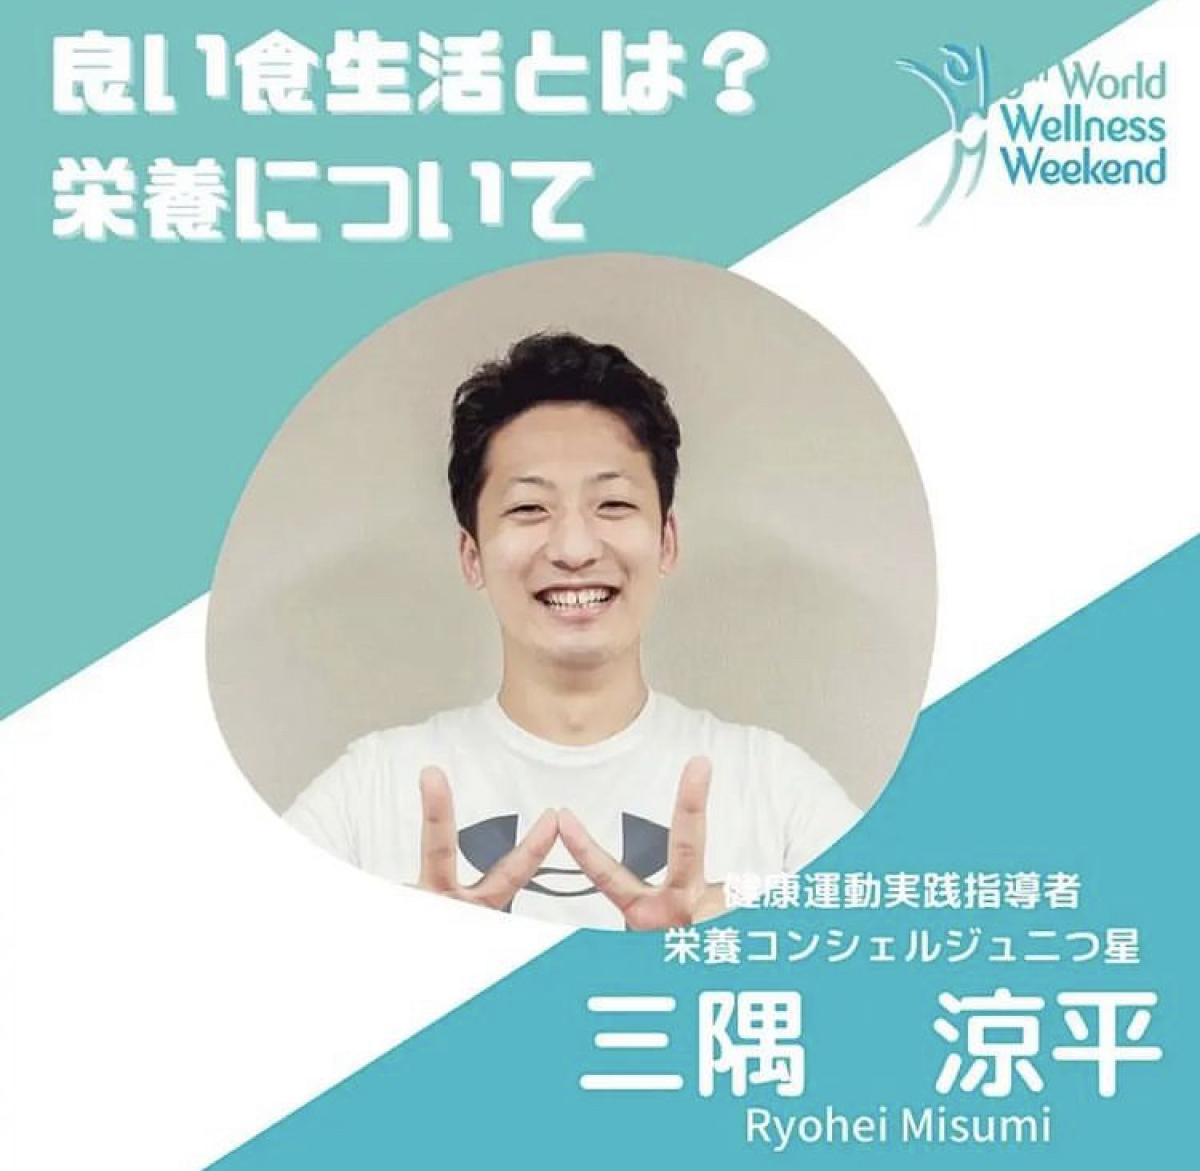 9月18日に三隅涼平さんが栄養セミナーの講師をご担当されます！【栄養コンシェルジュ取得後のご活躍】